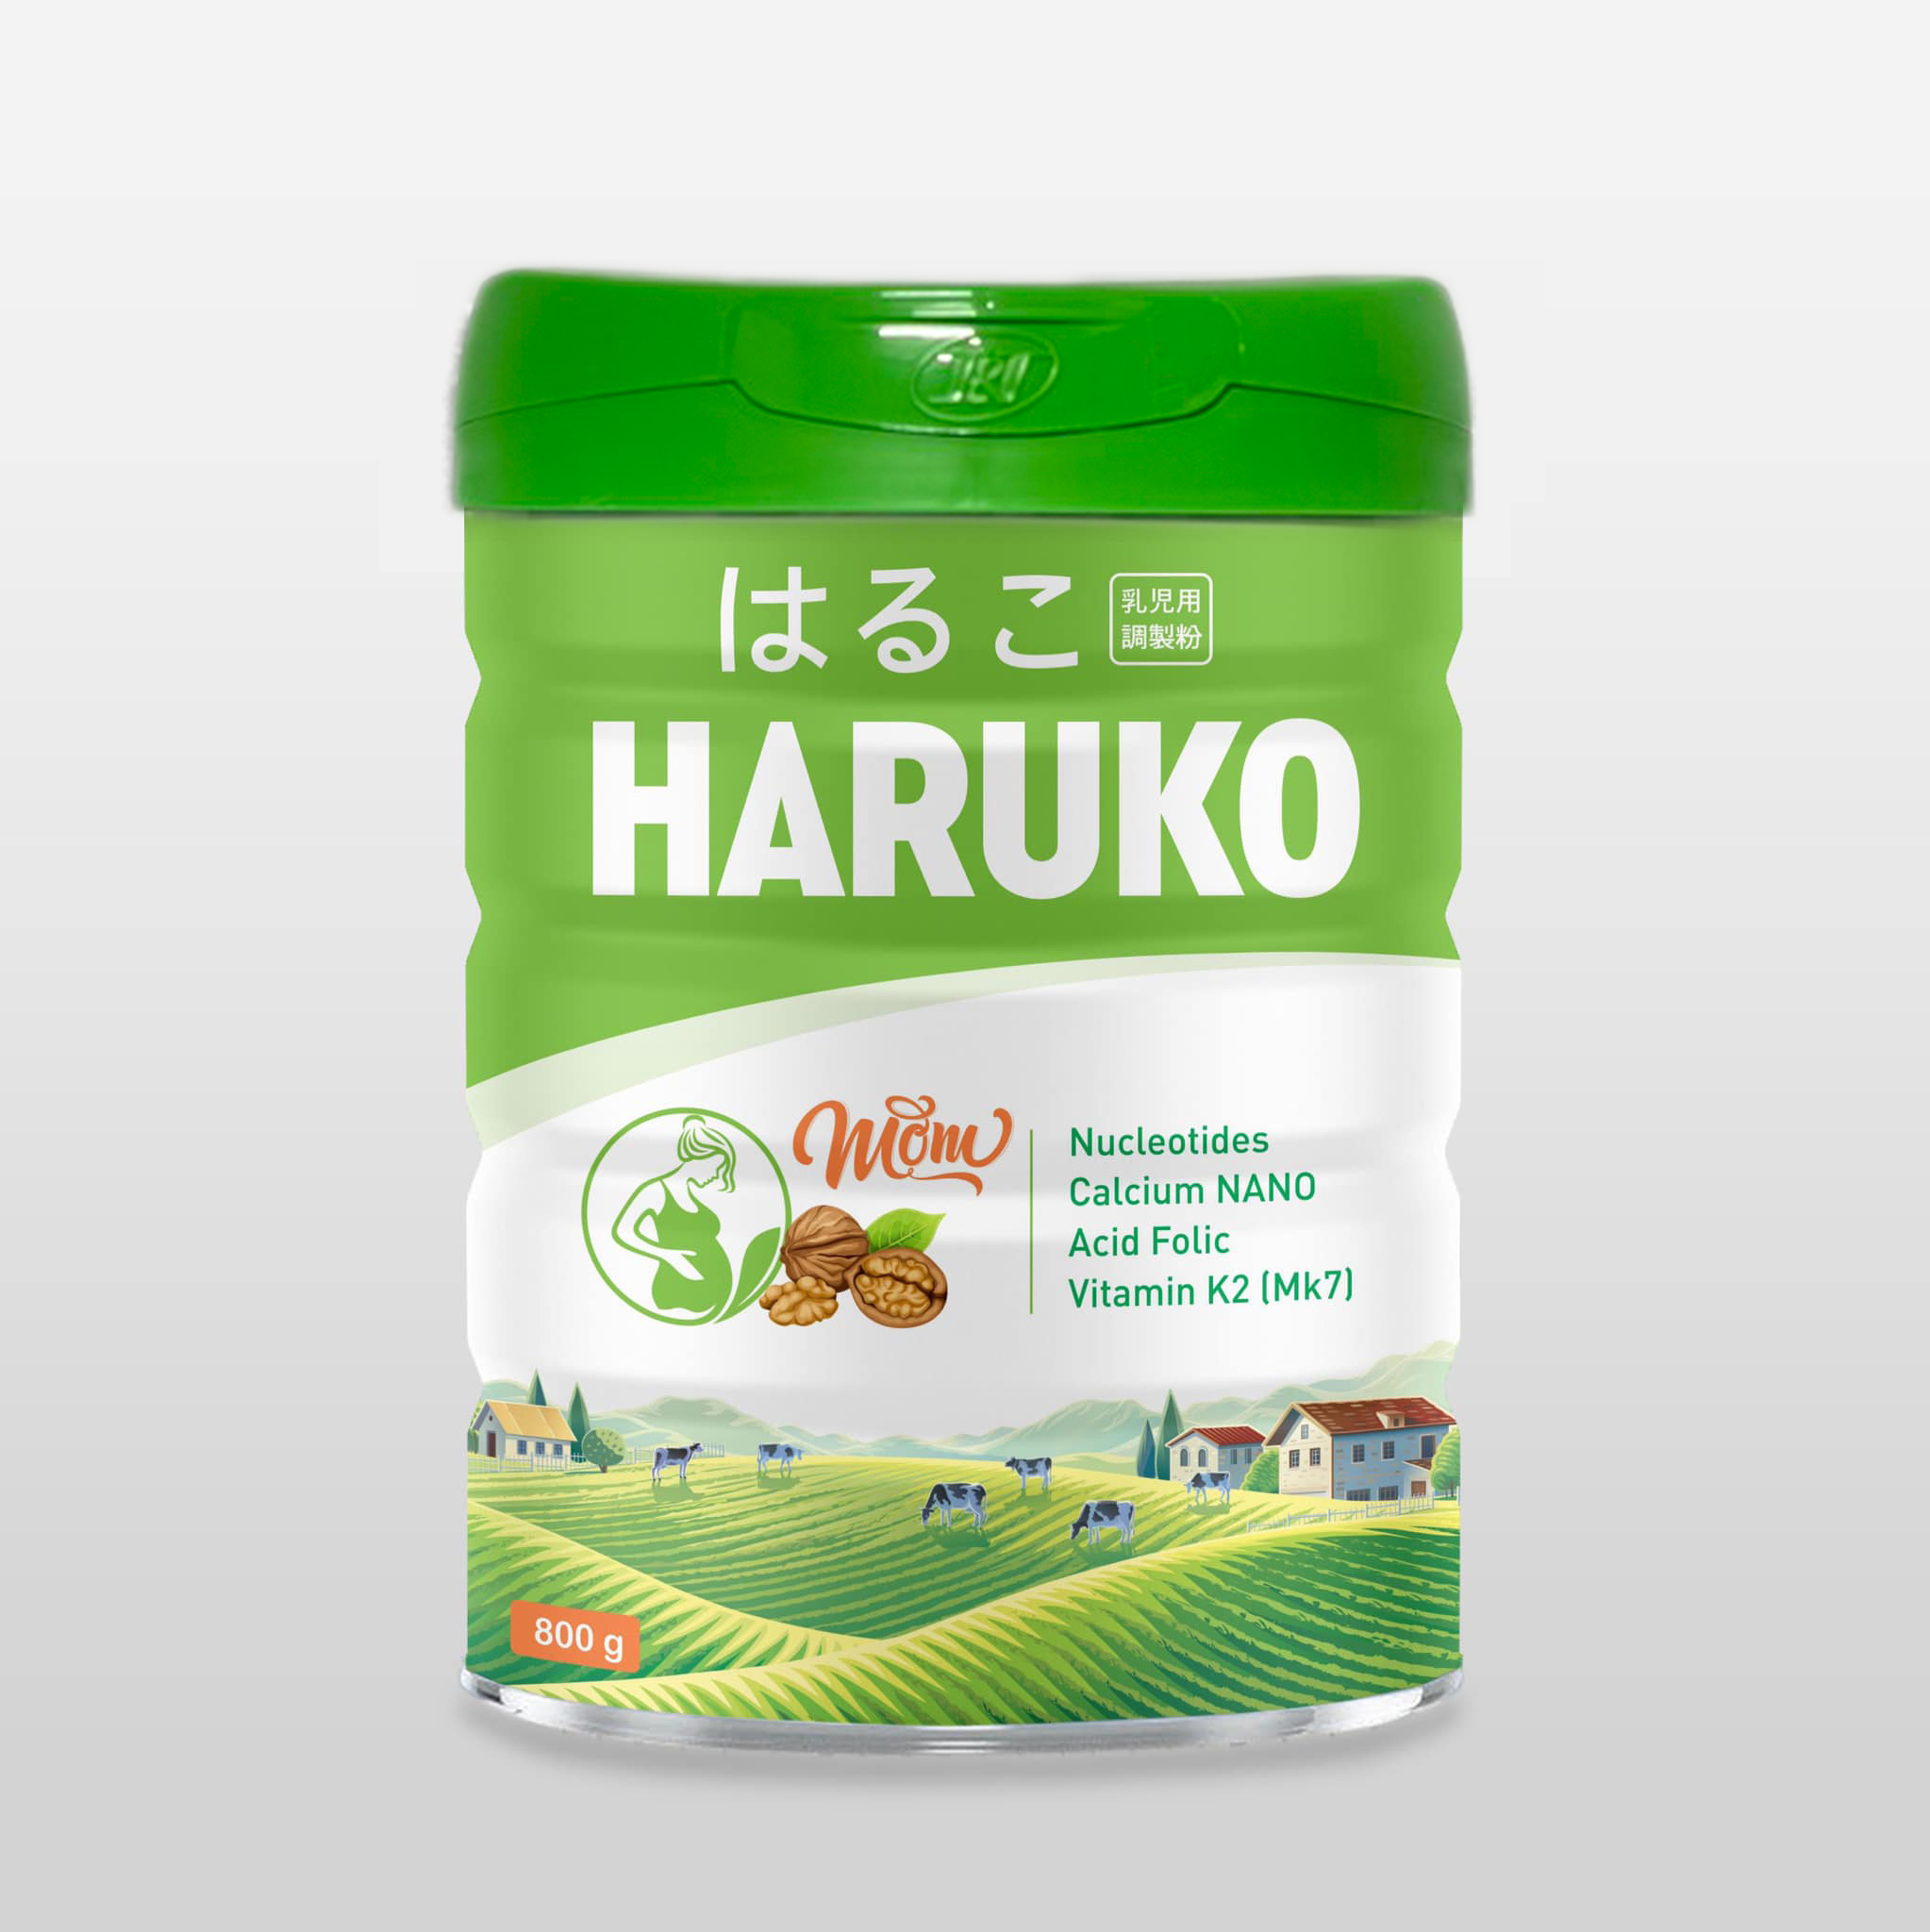 Haruko Mom